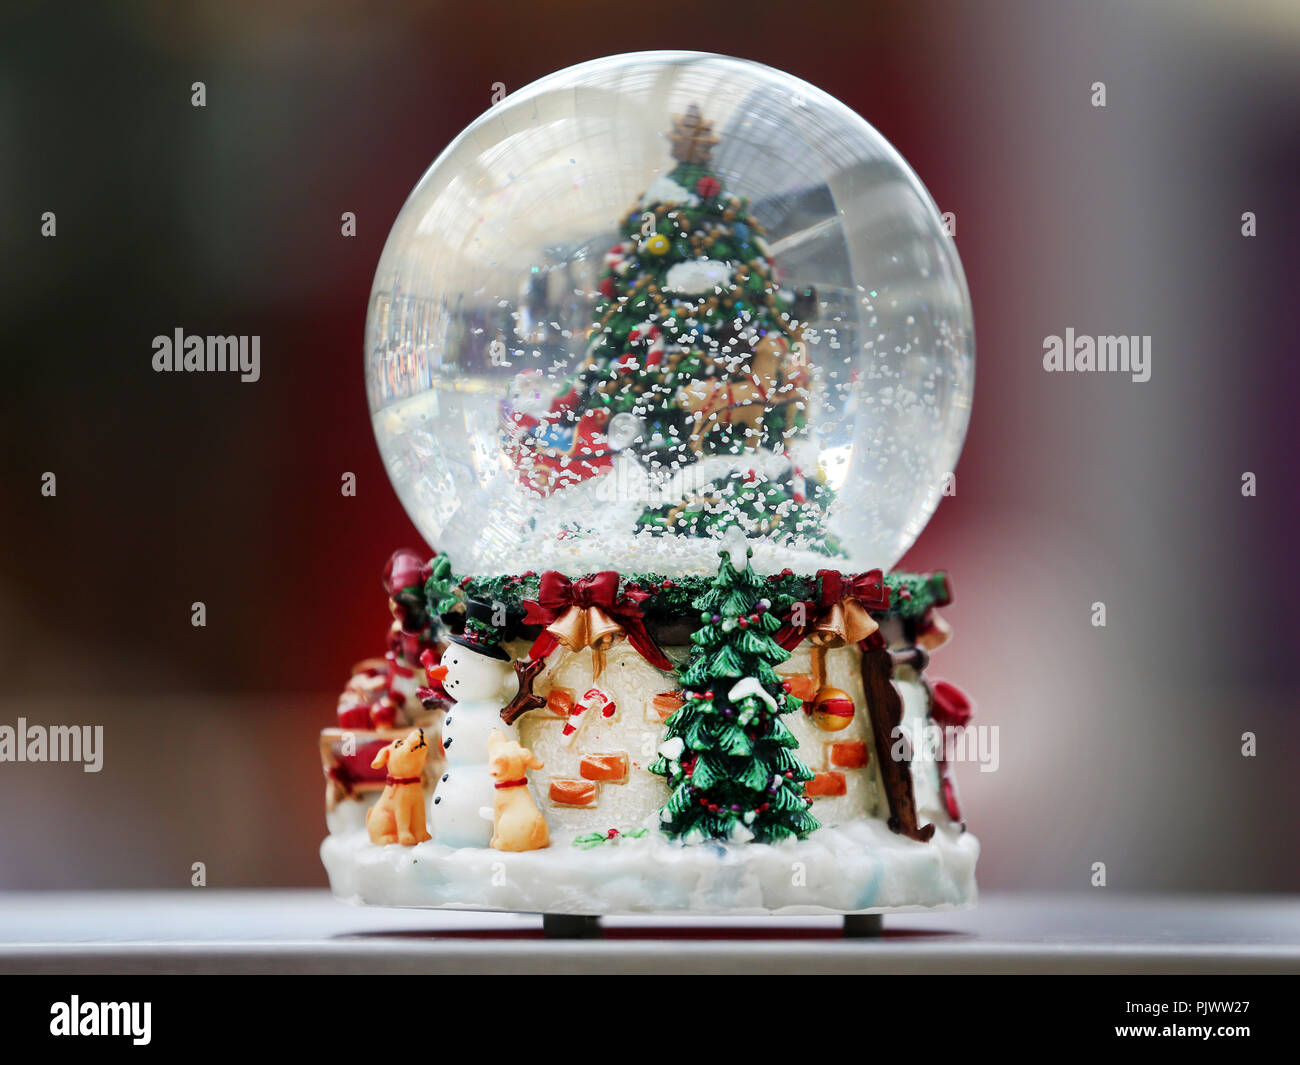 Essen, Deutschland. 05 Sep, 2018. Eine Schneekugel ist auf einem Regal auf der Christmasworld. Der Weihnachtsmarkt von rund 1.000 Quadratmetern wird voraussichtlich am 13. September 2018 zu öffnen. Foto: Roland Weihrauch/dpa/Alamy leben Nachrichten Stockfoto